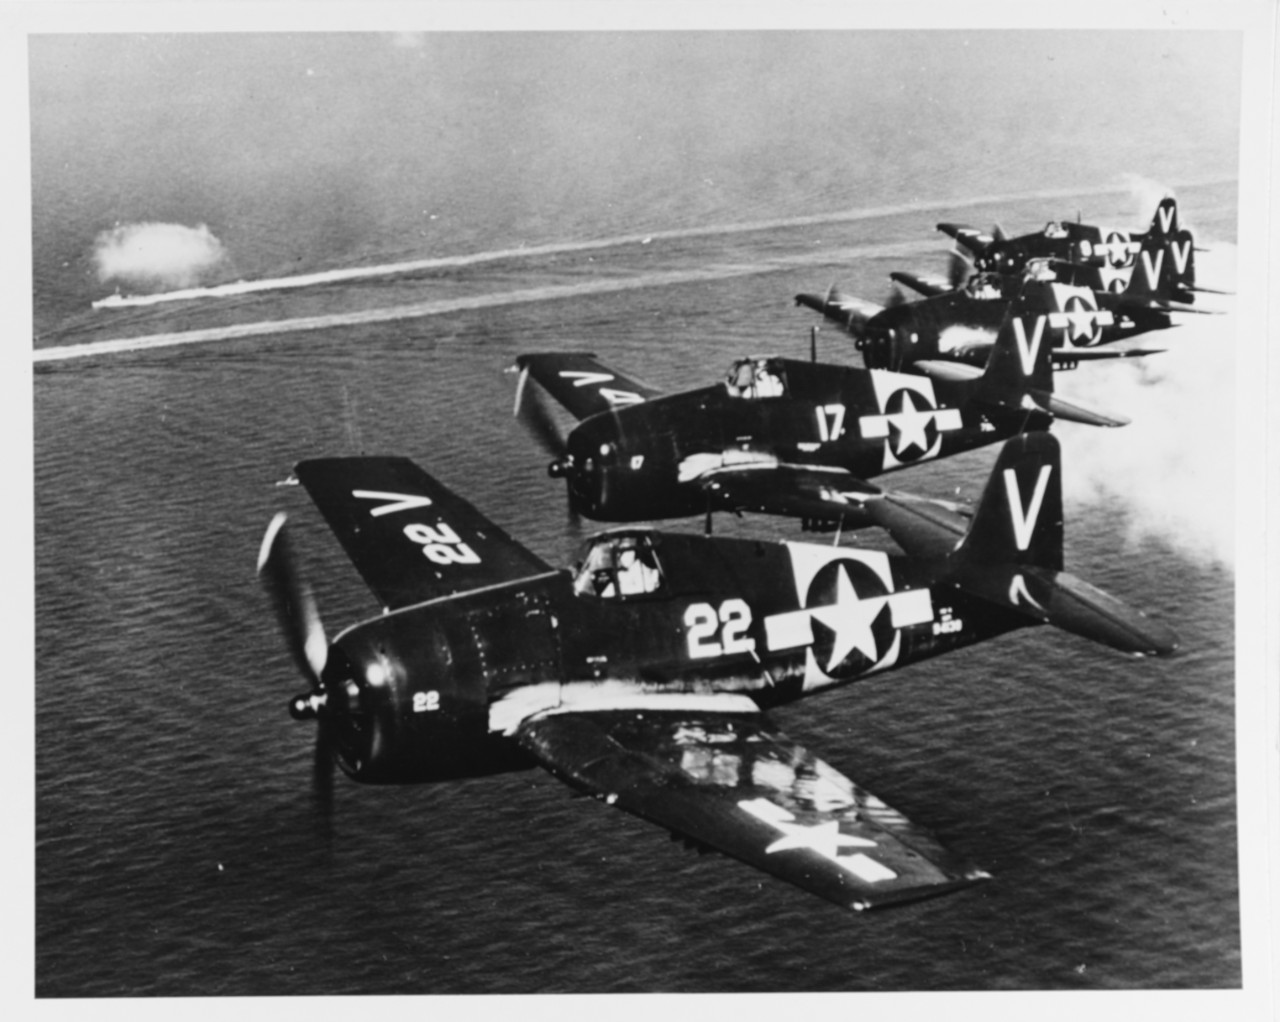 F6F "Hellcat" fighters